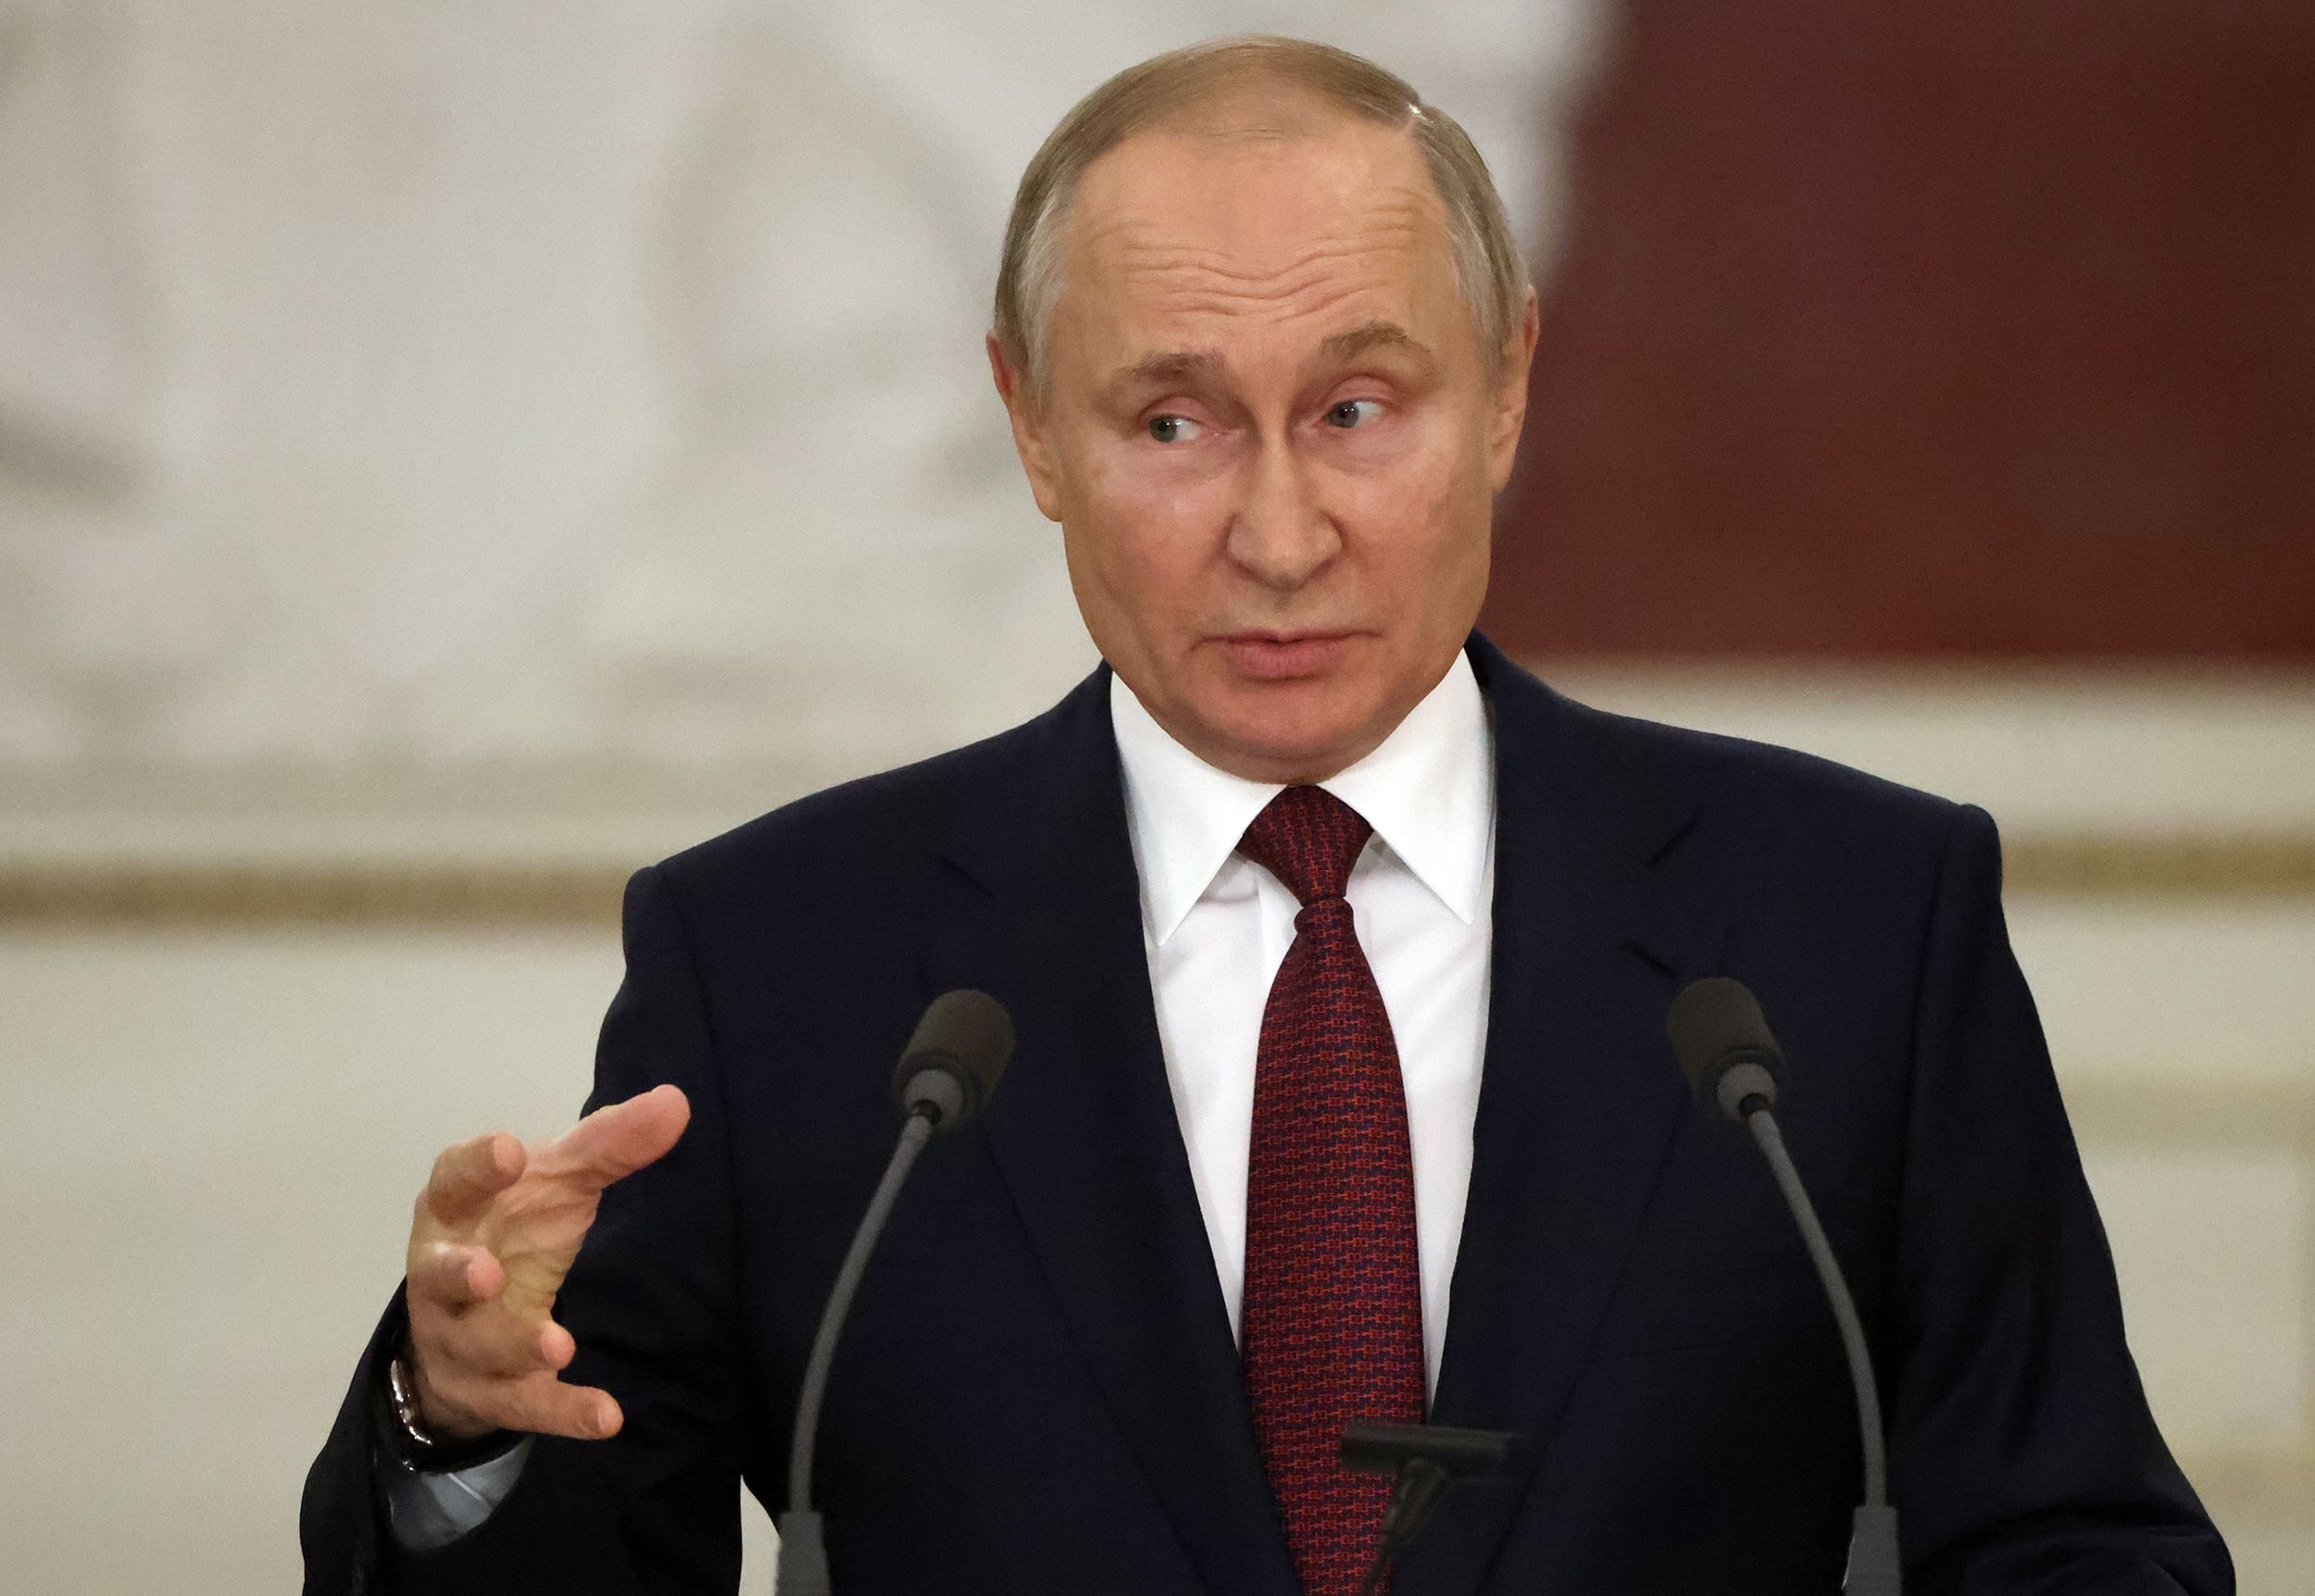 Putin: Çoxqütblü dünya reallığa çevrilib